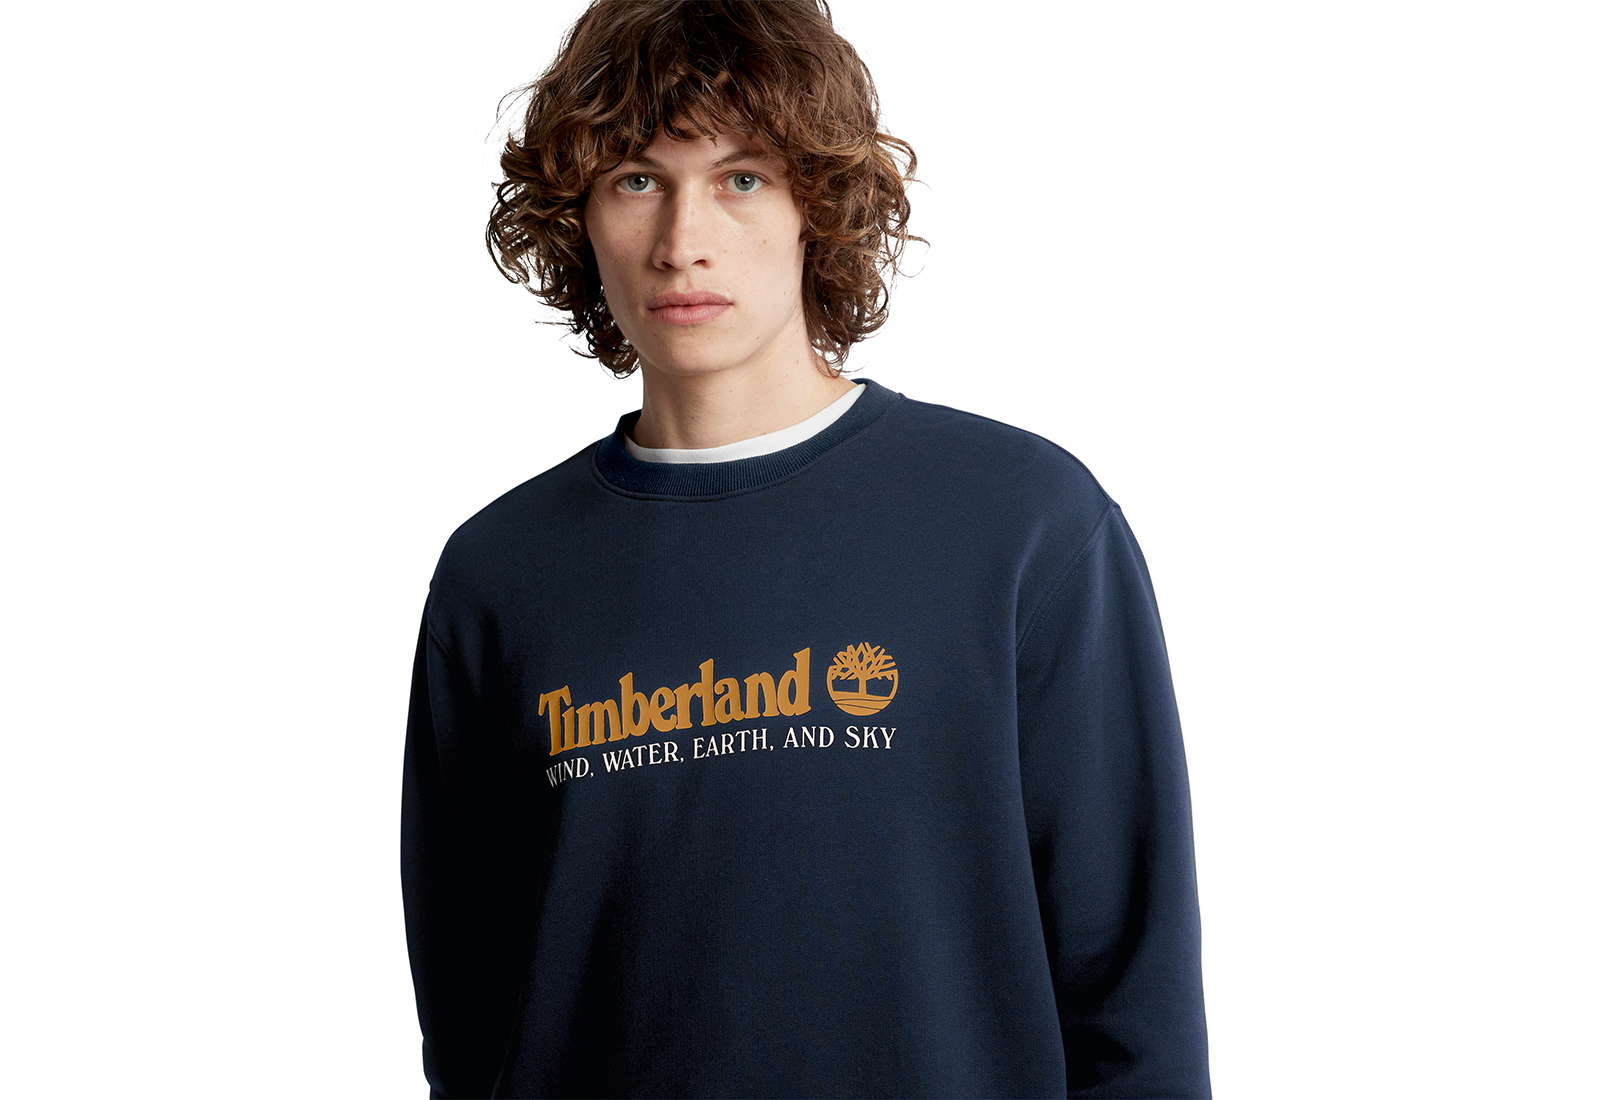 Timberland Îmbrăcăminte Wwes Crew Neck